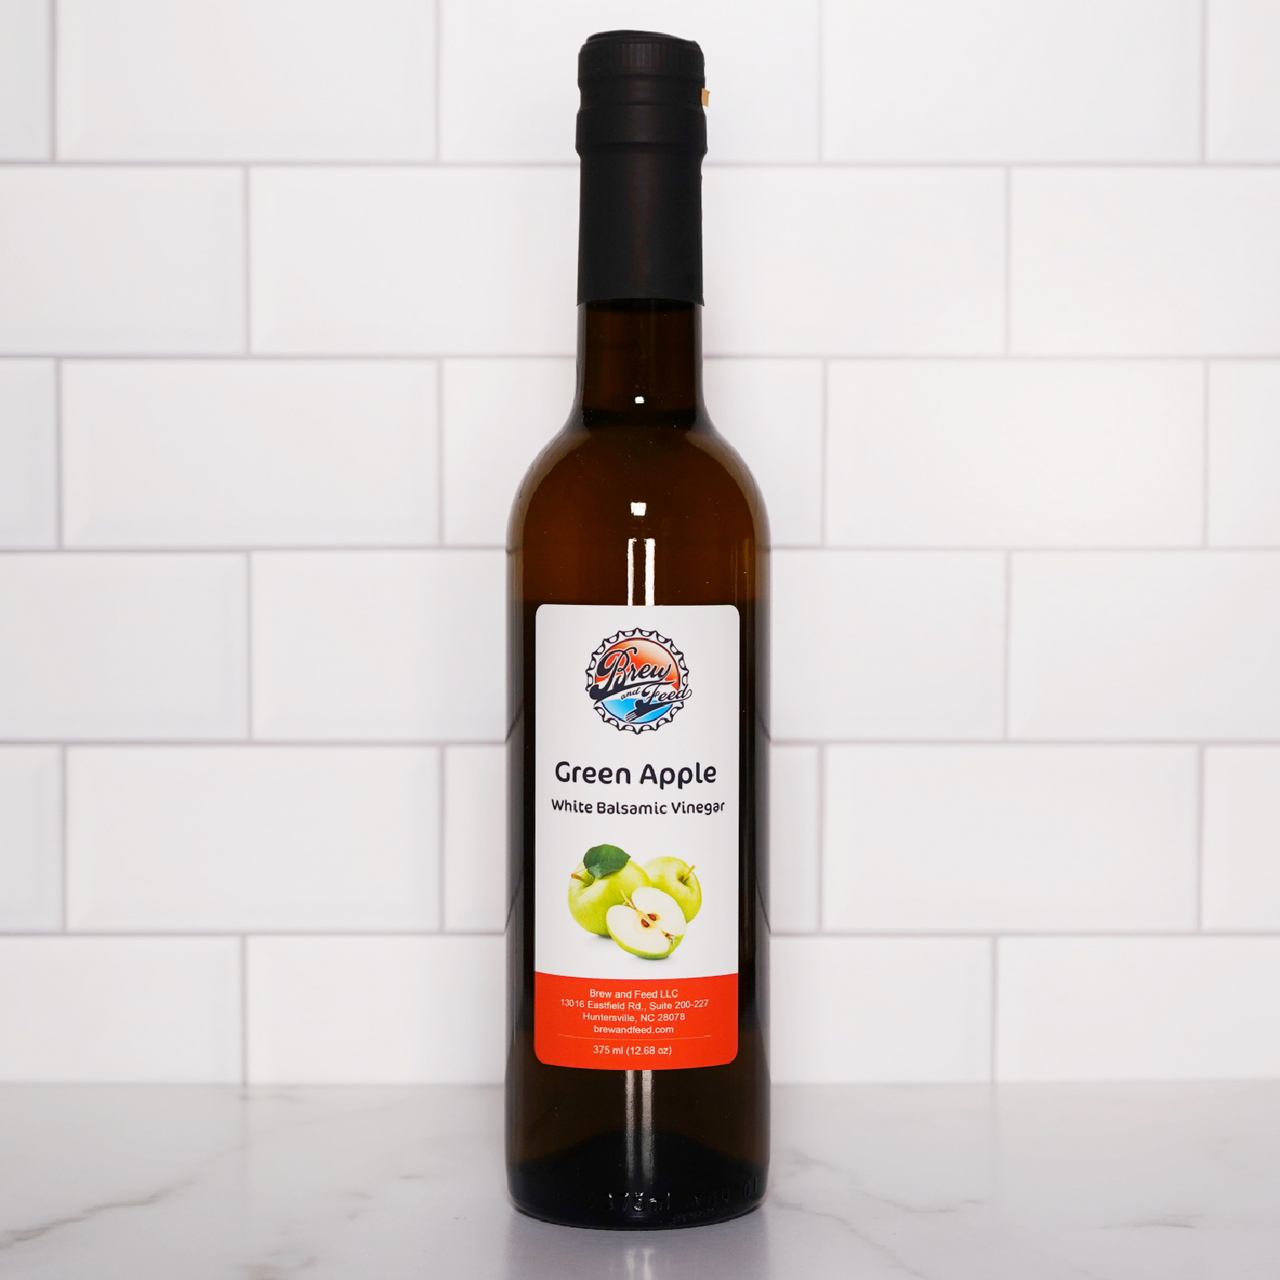 Green Apple White Balsamic Vinegar (375 ml / 12.68 OZ)